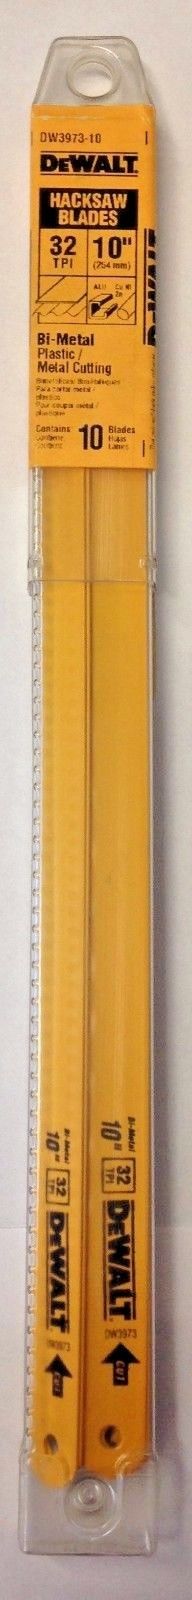 Dewalt DW3973-10 10" x 32 TPI Bi-Metal Plastic/Metal Cutting Hacksaw Blades USA